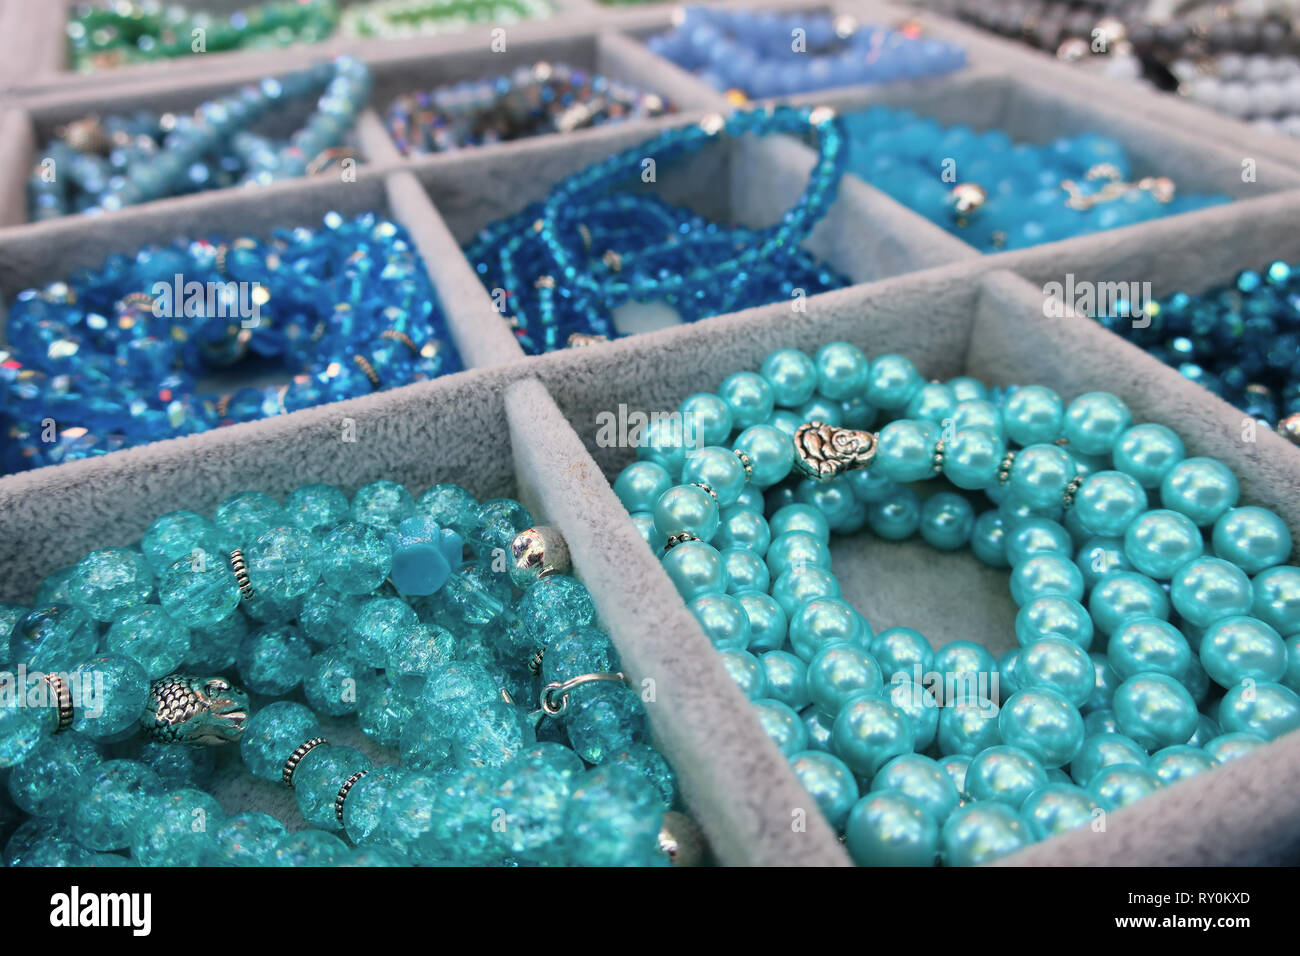 Joyería artesanal de color azul con perlas brillantes Foto de stock